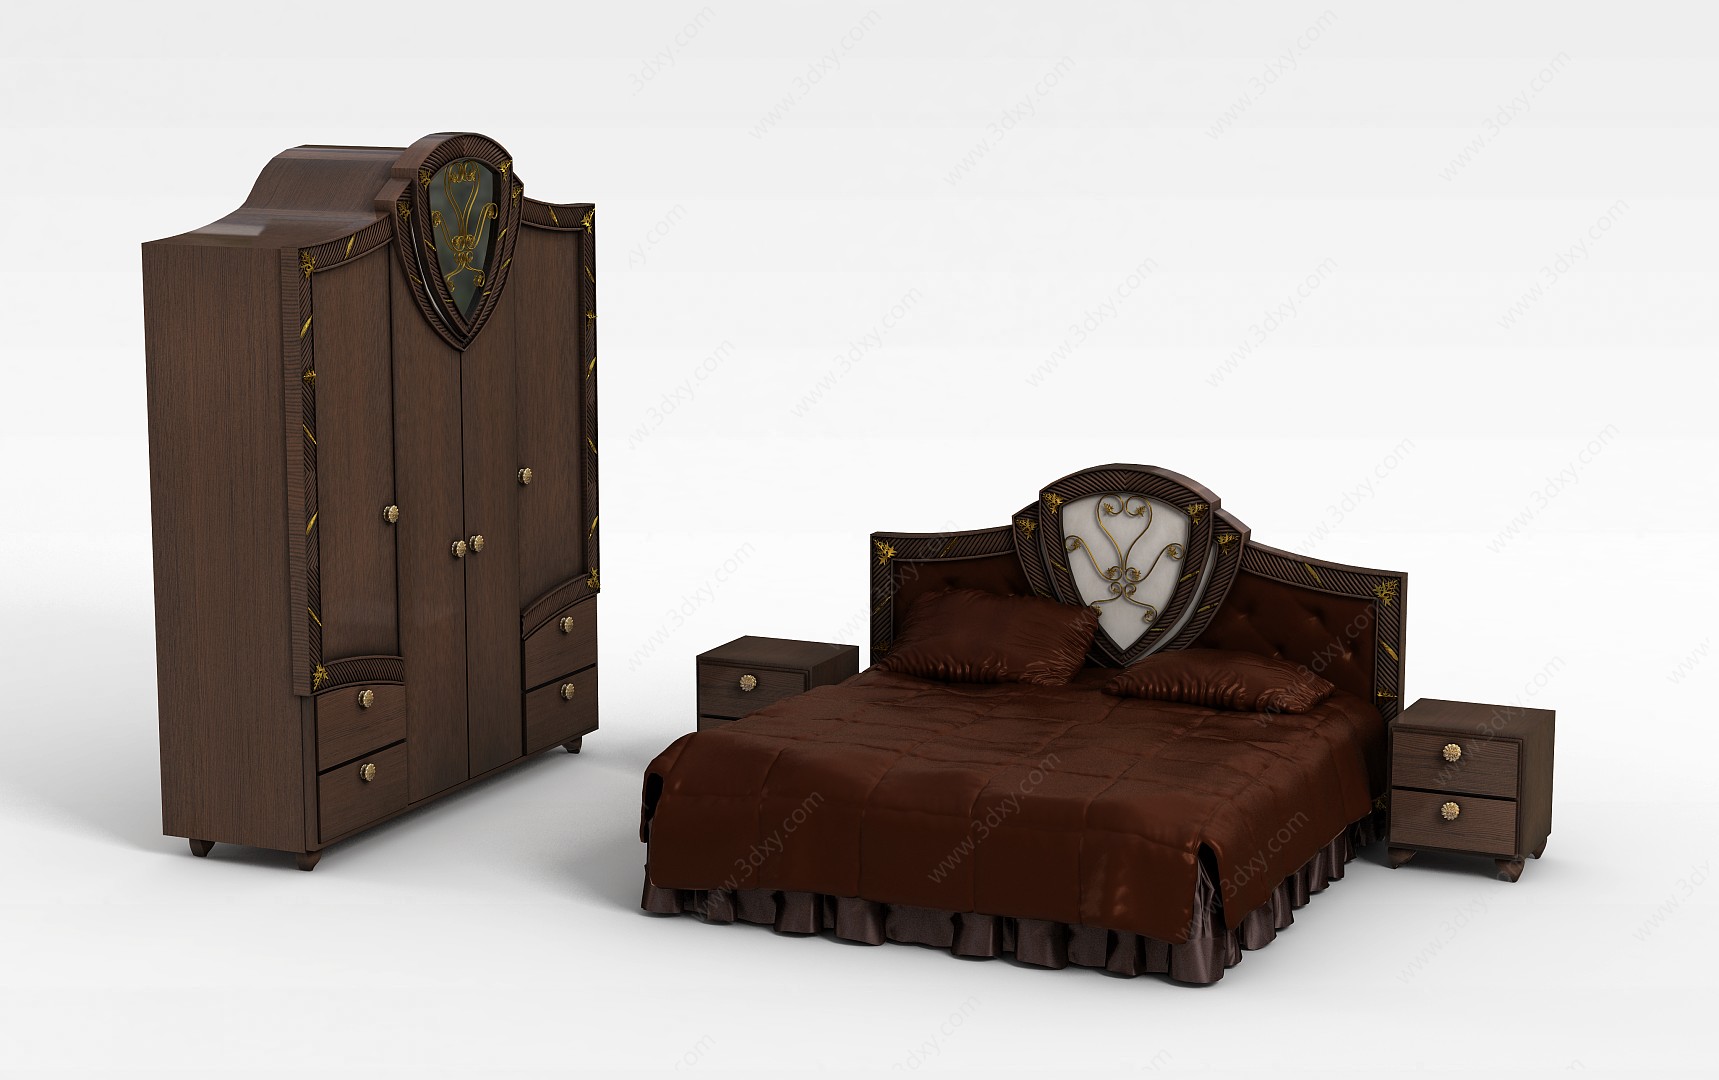 木质双人床3D模型